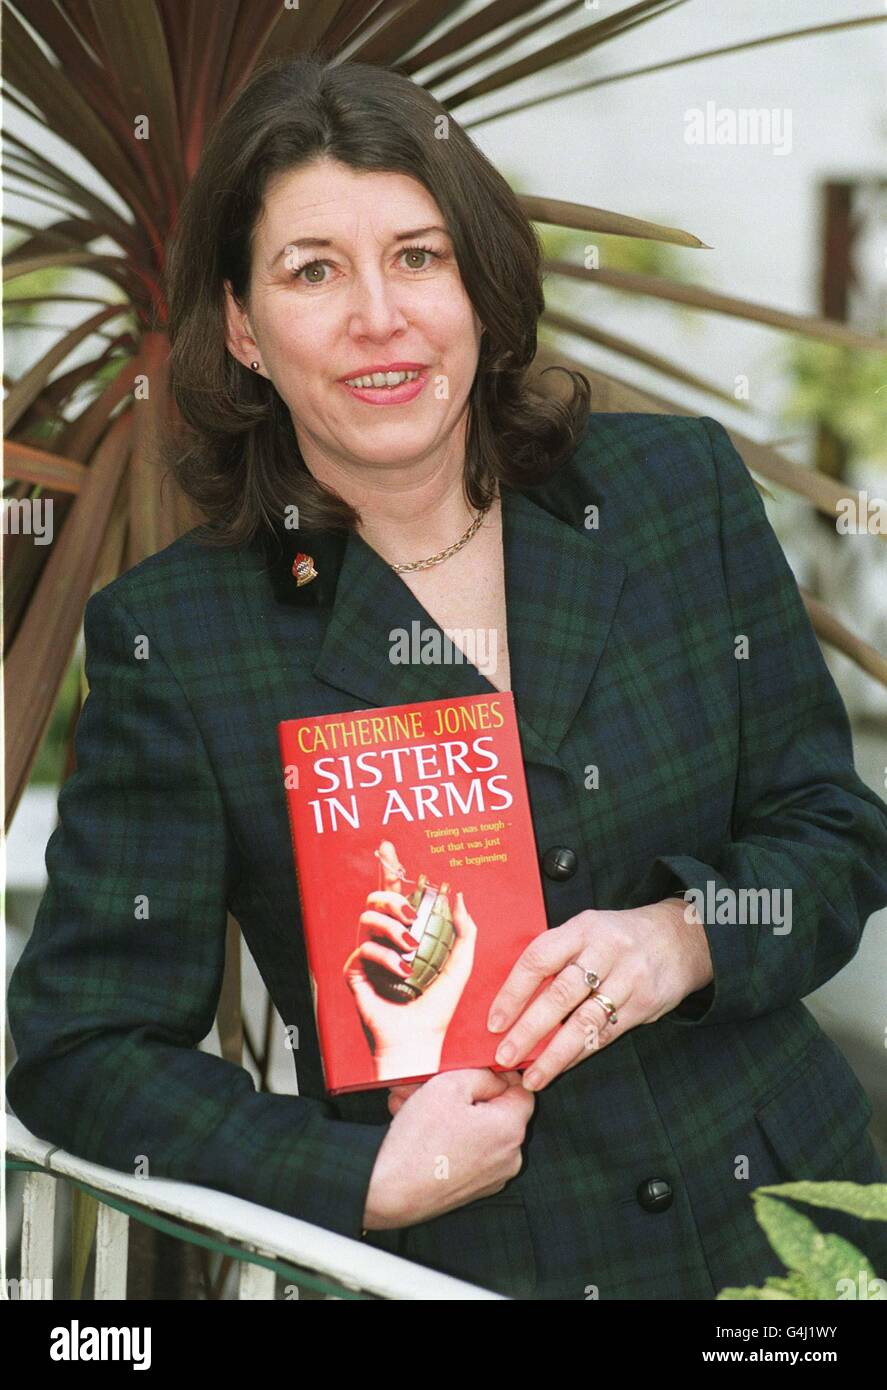 Catherine Jones, einer der acht in der engeren Auswahl stehenden Romane, für den Parker Romantikroman des Jahres 1999, in London mit ihrem Roman 'Sisters in Arms'. Der Gesamtsieger wird am 21. April 1999 bekannt gegeben. Stockfoto